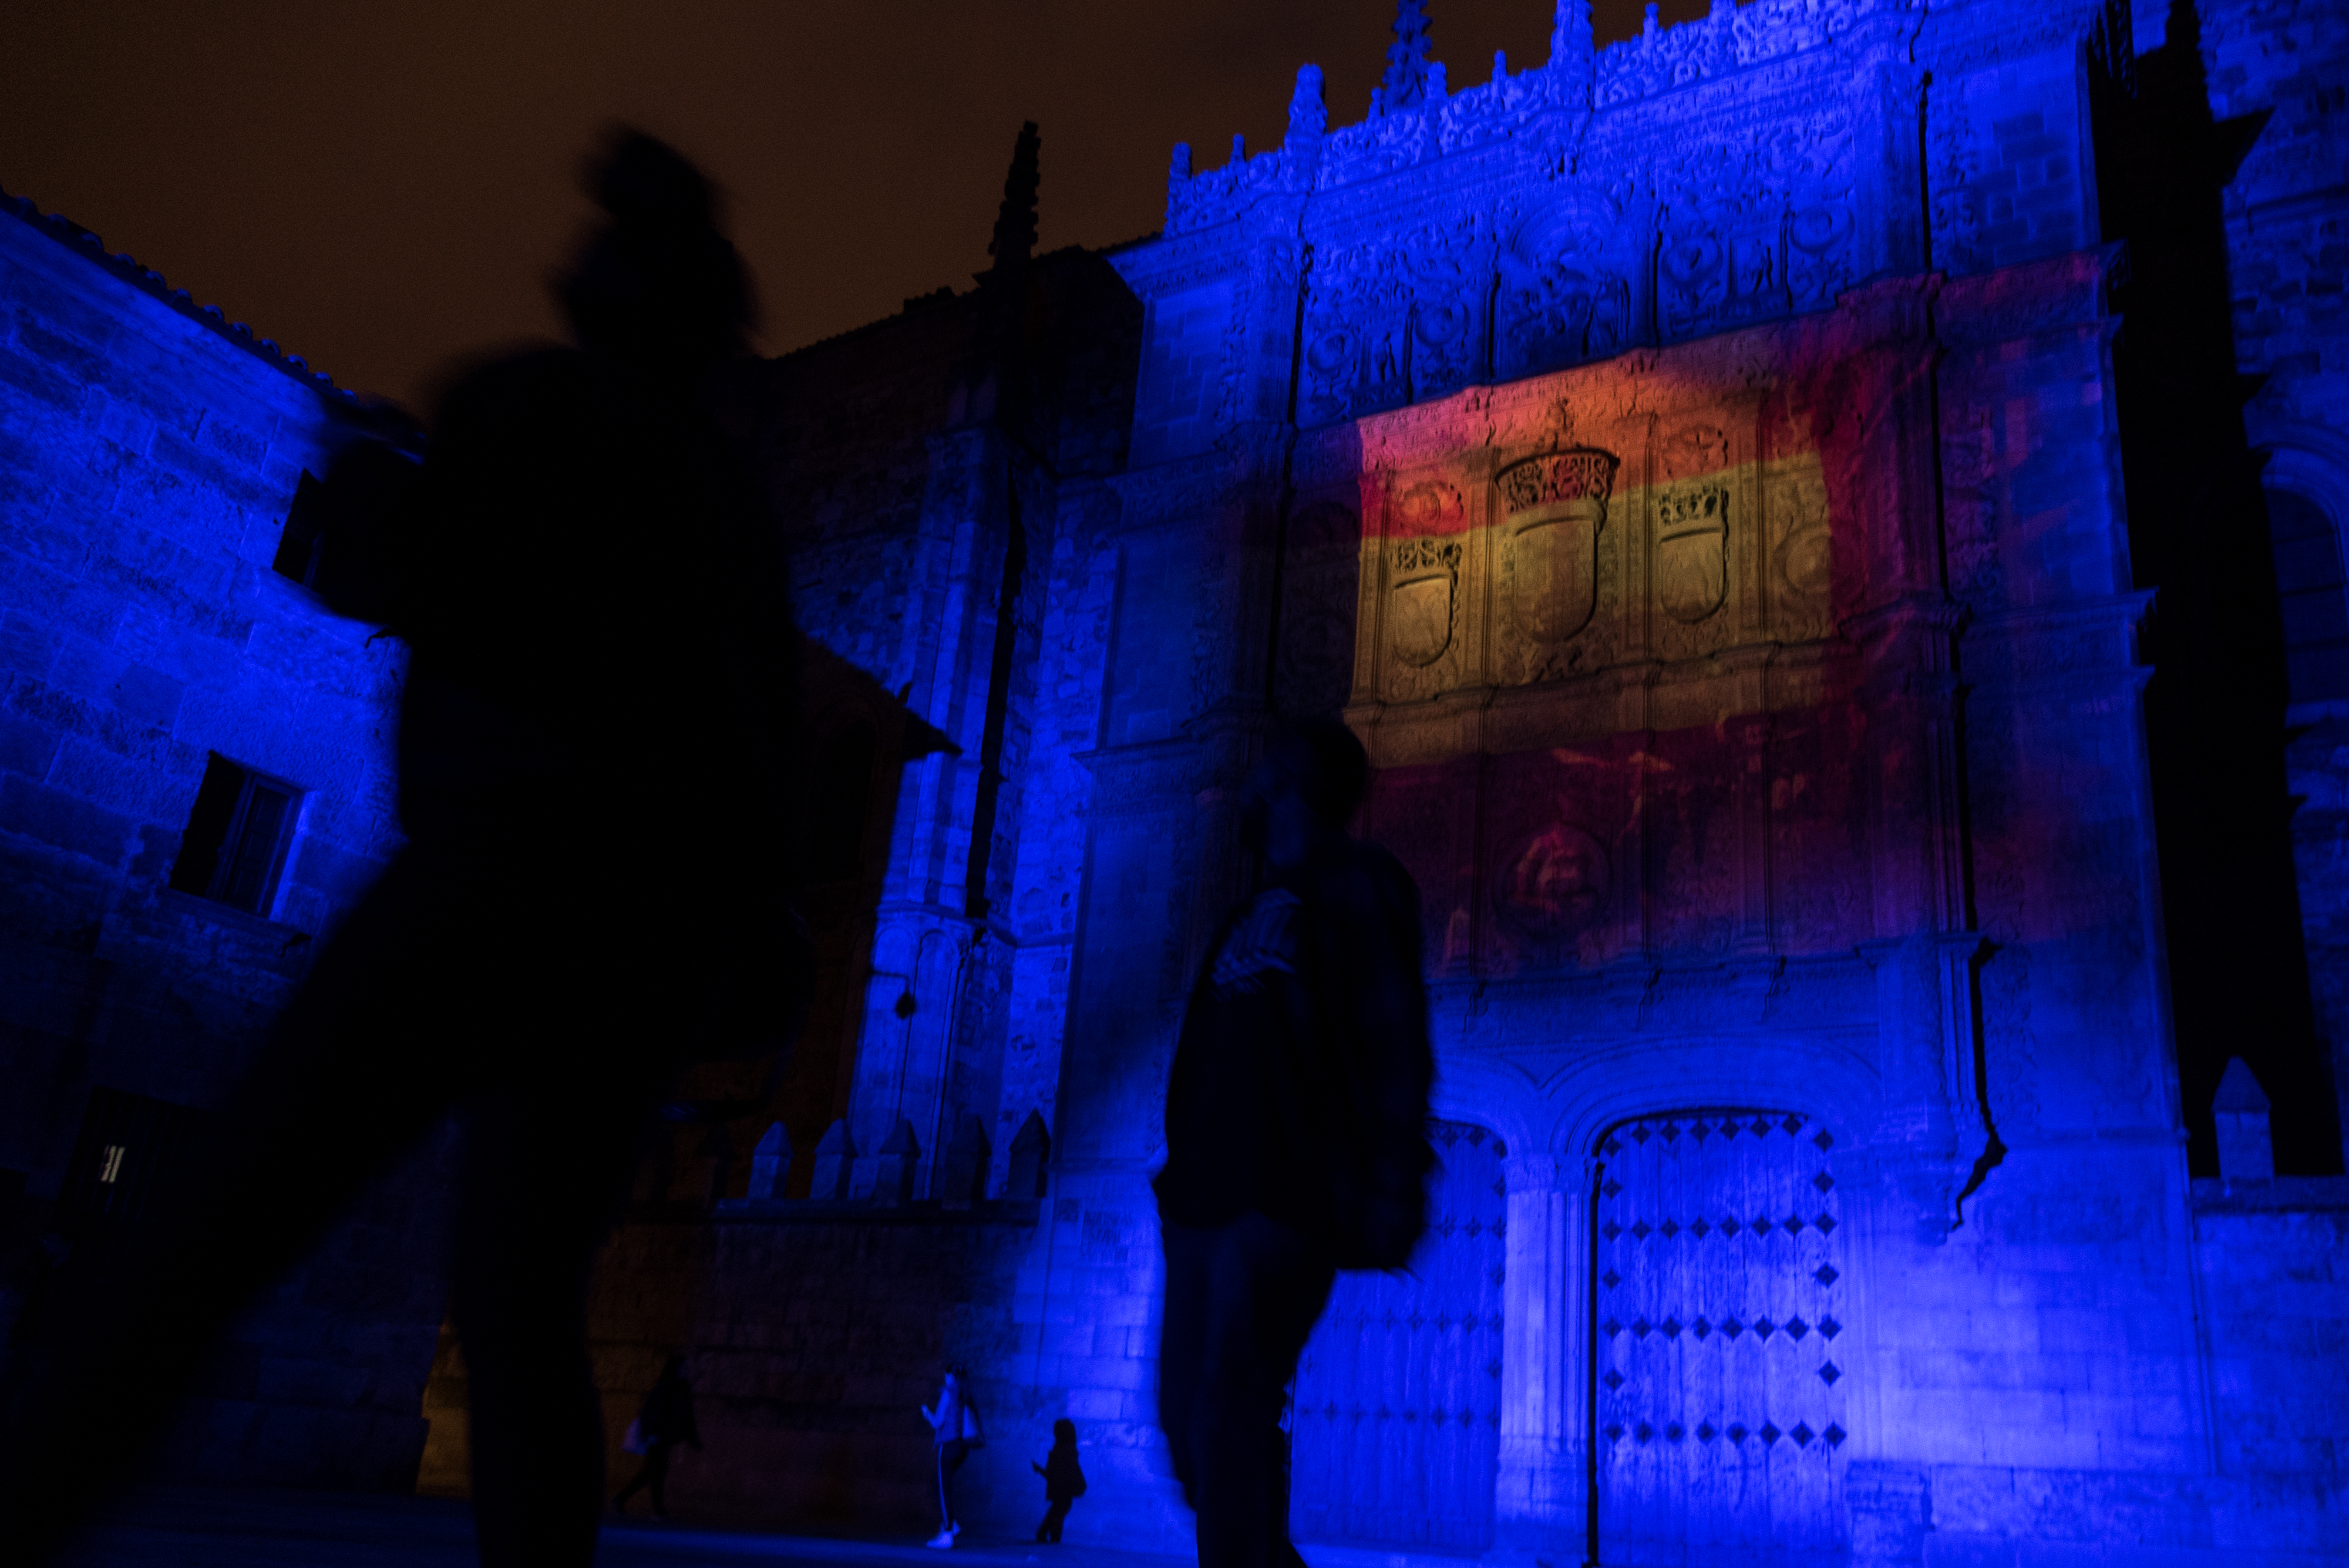 La Universidad de Salamanca ilumina y proyecta la bandera de la UE en su fachada rica para conmemorar el Día de Europa